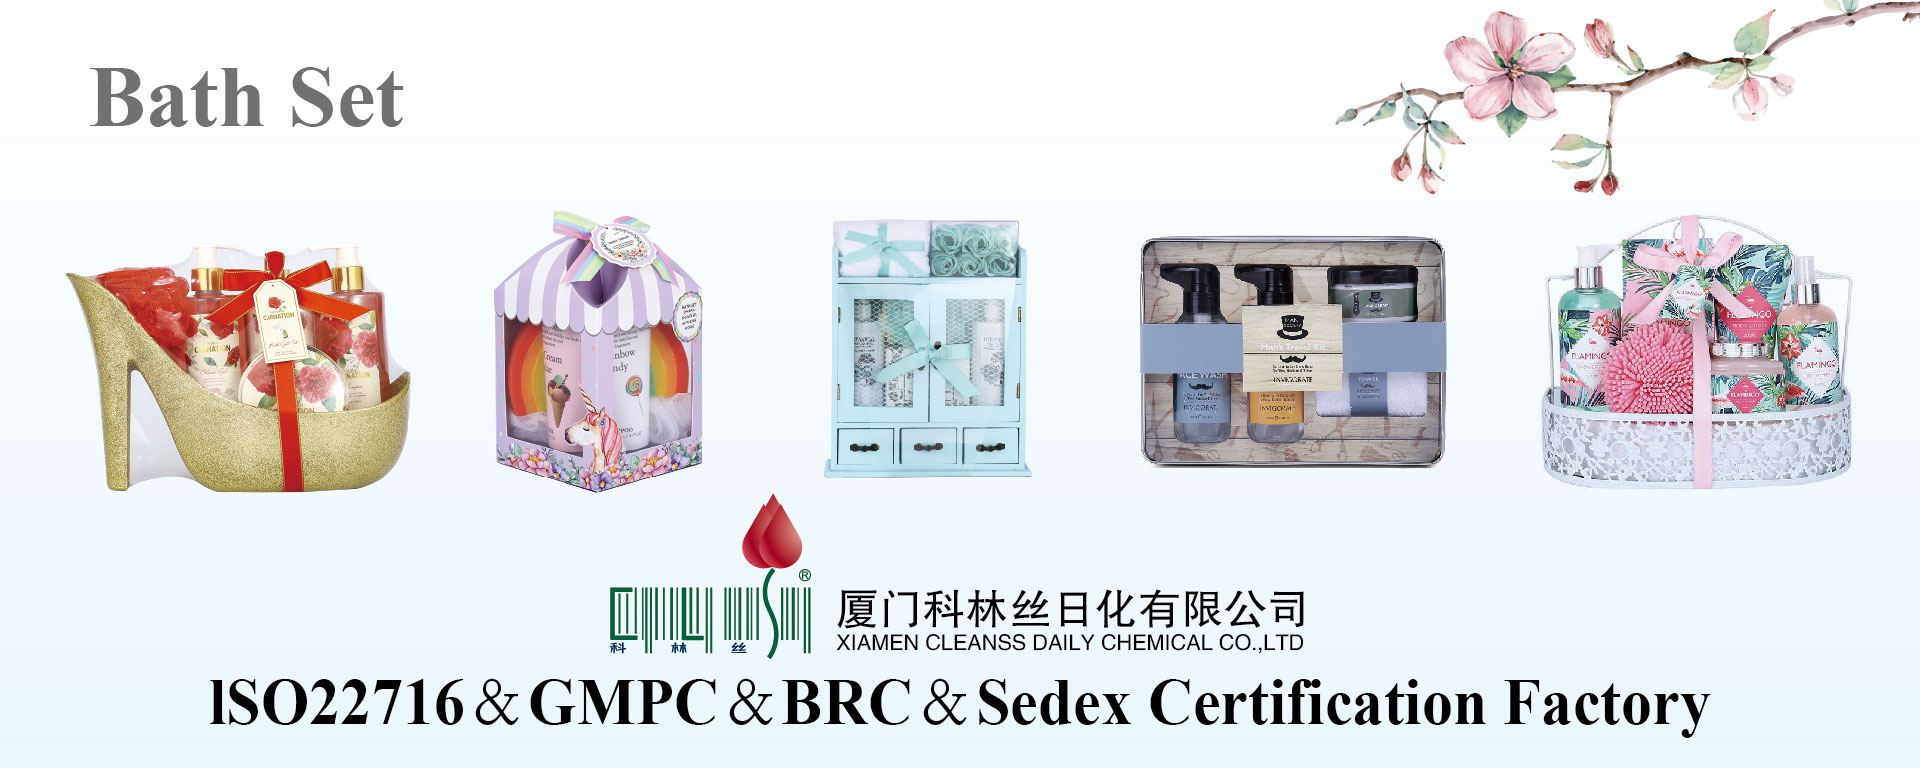 Xiamen nettoie quotidiennement chimique Co., Ltd.